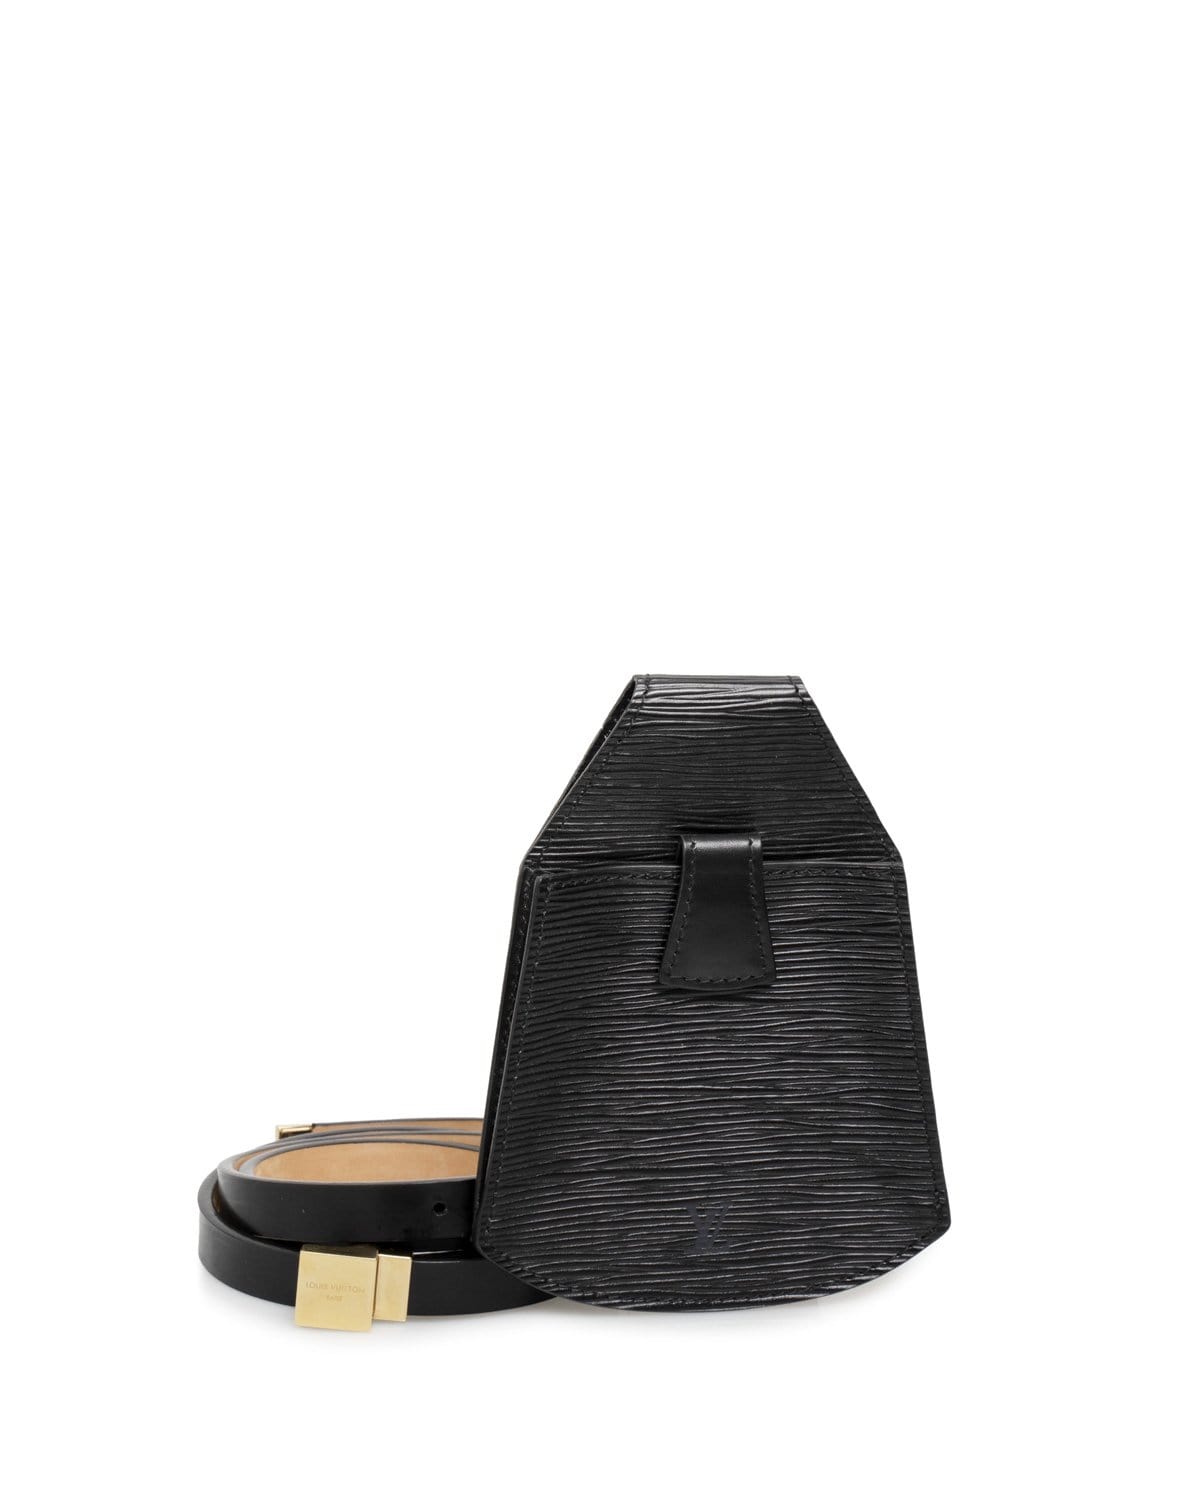 Louis Vuitton Louis Vuitton Black Leather Belt Bag Pouch GHW - AGL1463